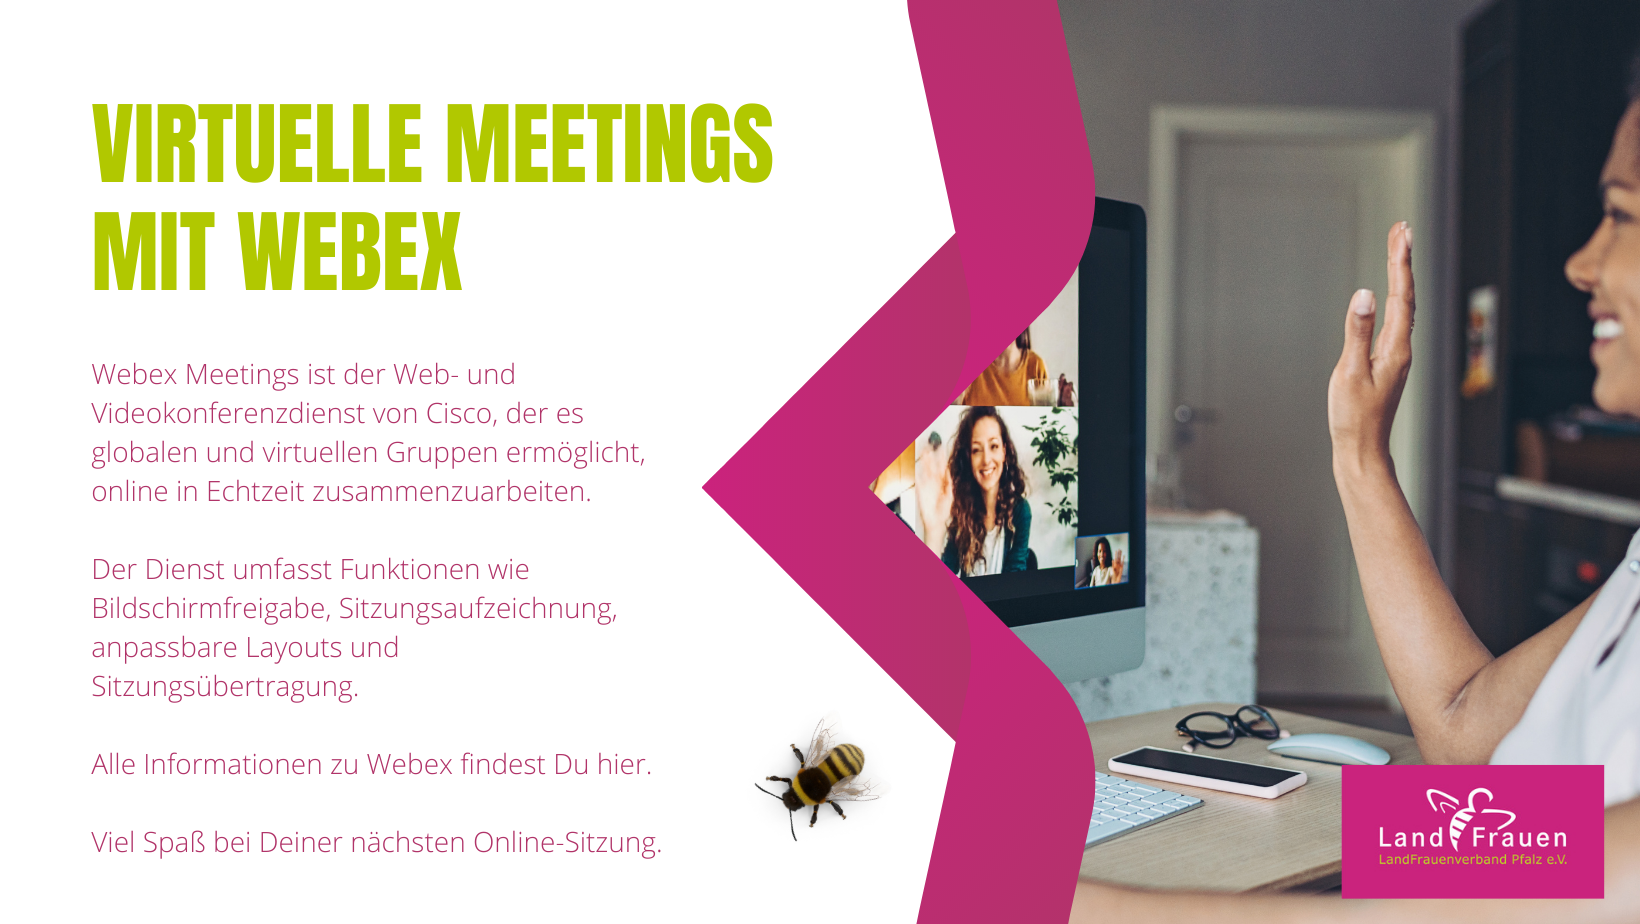 Virtuelle Meetings mit Webex